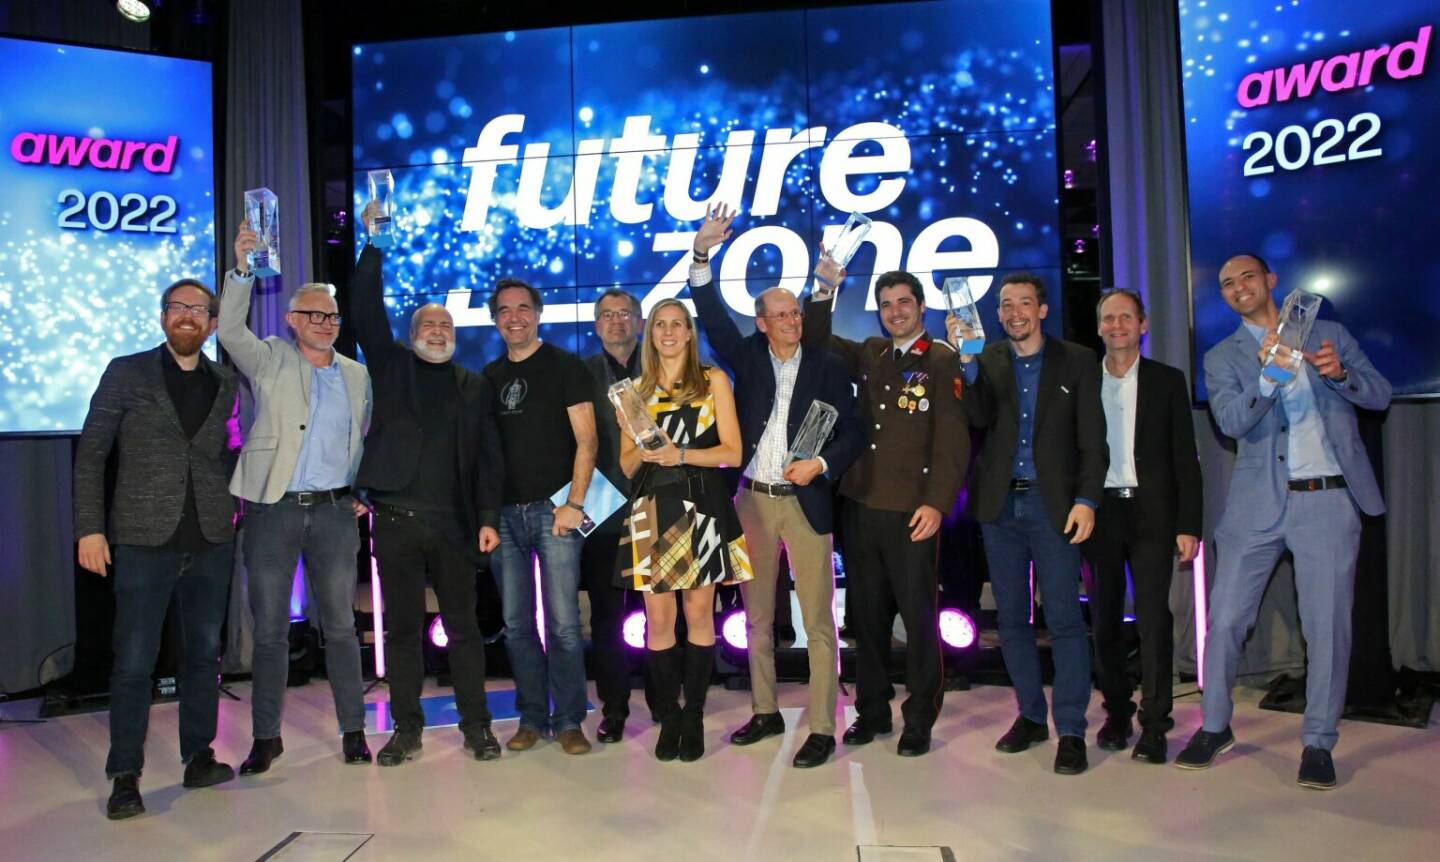 Die Gewinner:innen des futurezone Award 2022 auf der Bühne, Schubu als Start-up des Jahres und mit Publikumspreis prämiert; Katharina Krösl erhält „Women in Tech“-AwardFotocredit:KURIER/Gerhard Deutsch